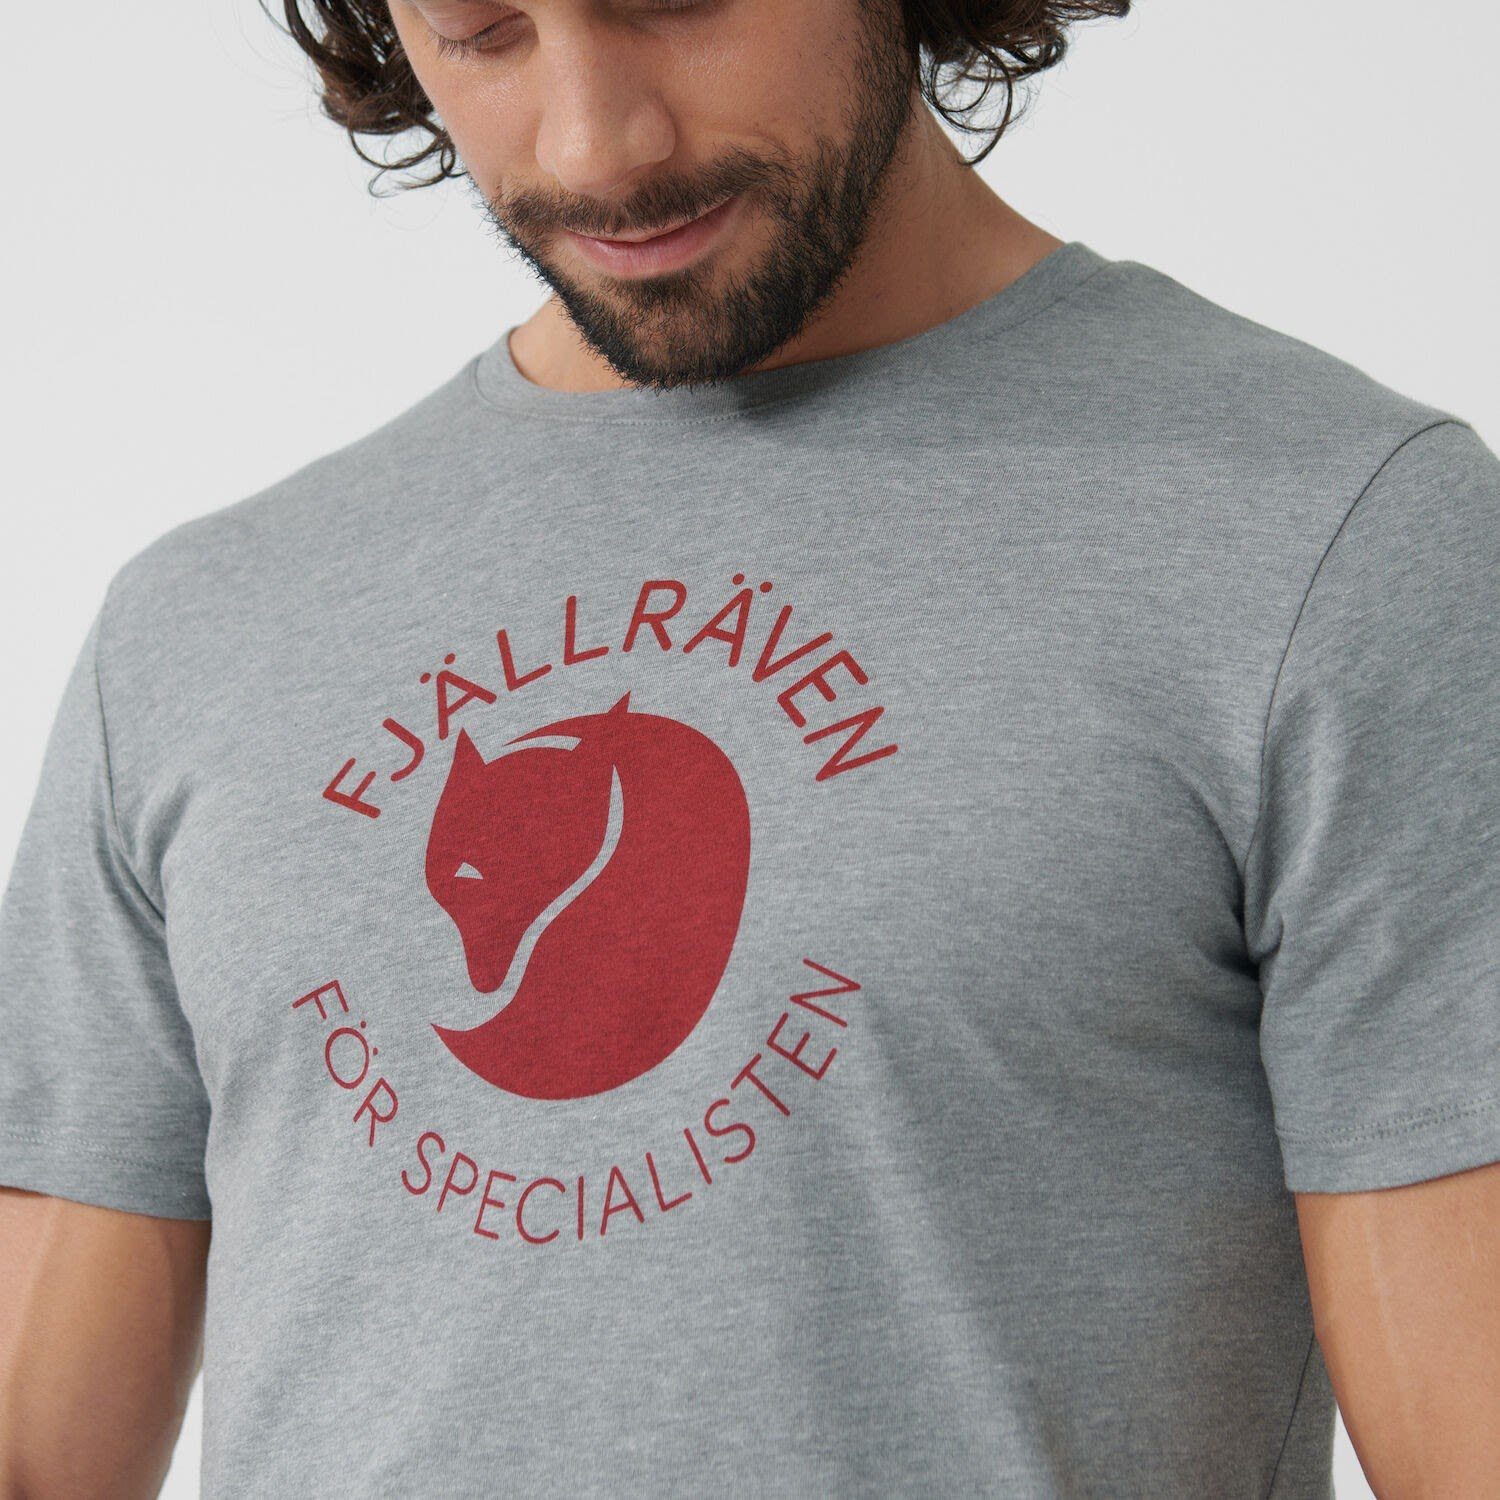 T-shirt Fjällräven Fox M Grey Kurzarm-Shirt Melange Herren Fjällräven T-Shirt